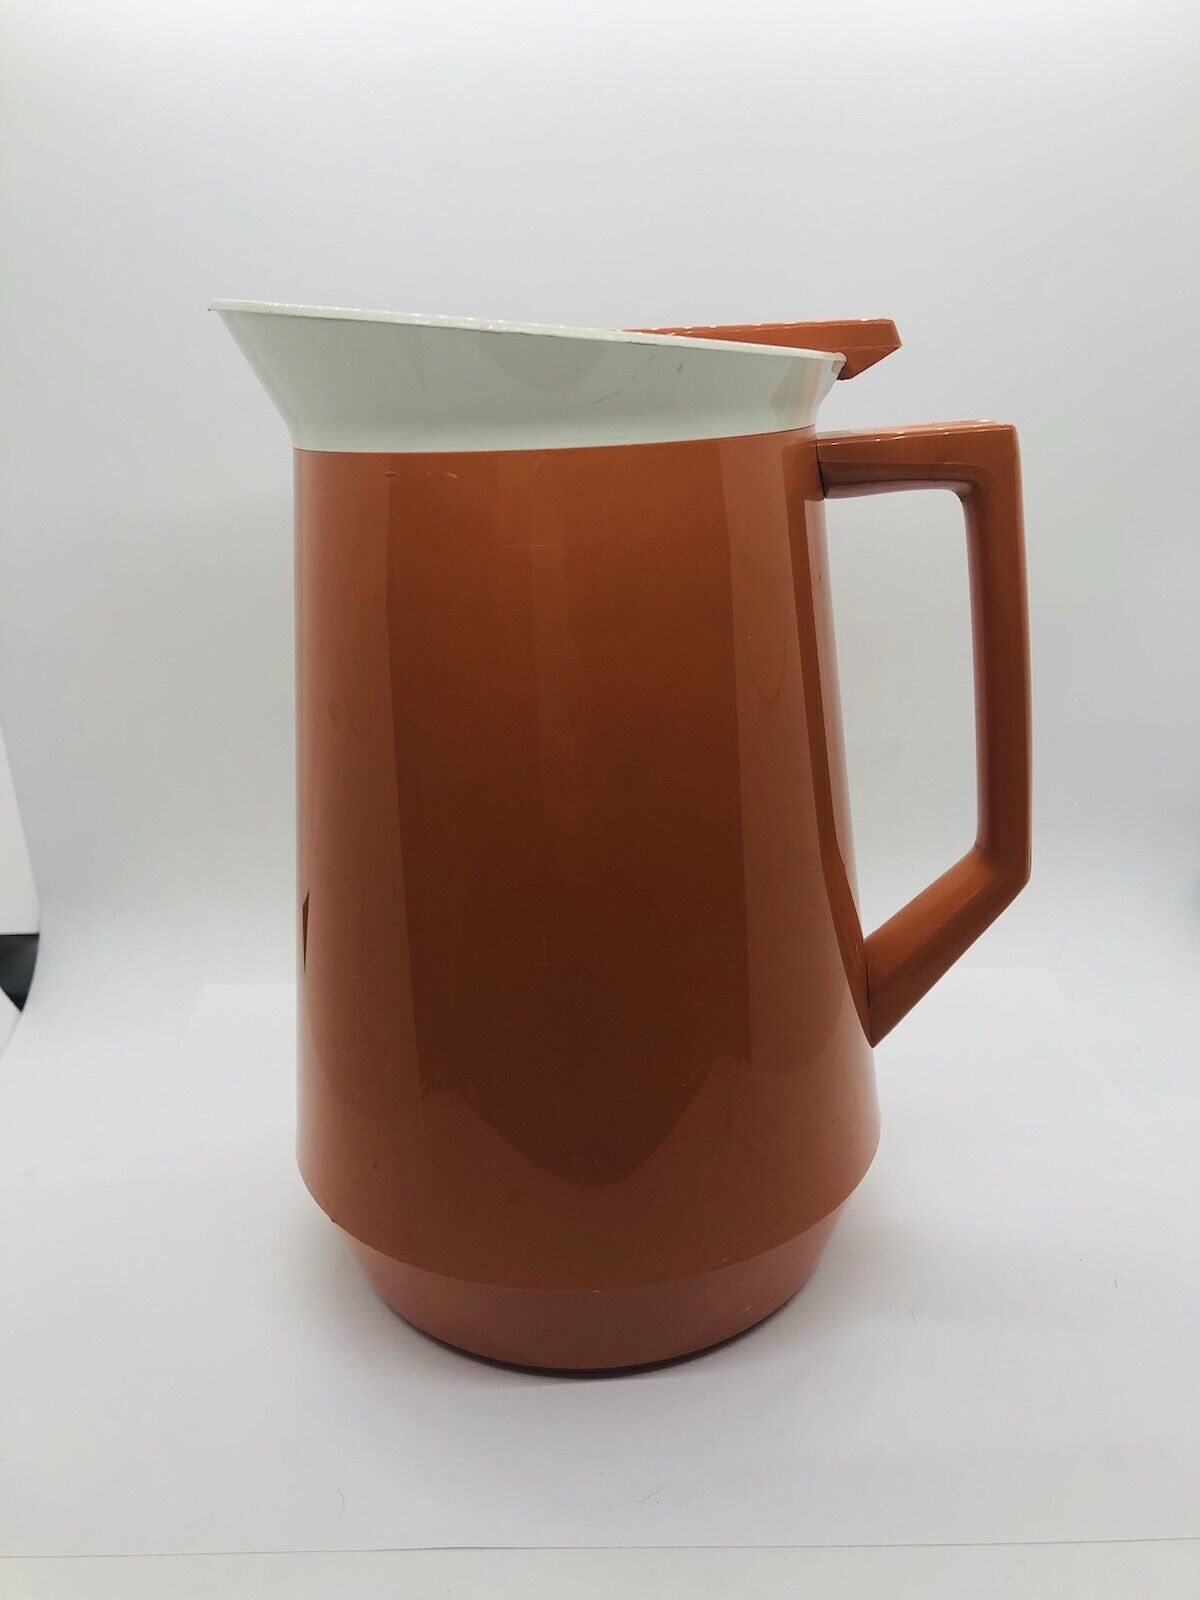 Bolta vintage carafe pitcher 2432 General Tire 8“ high dark orange USA made